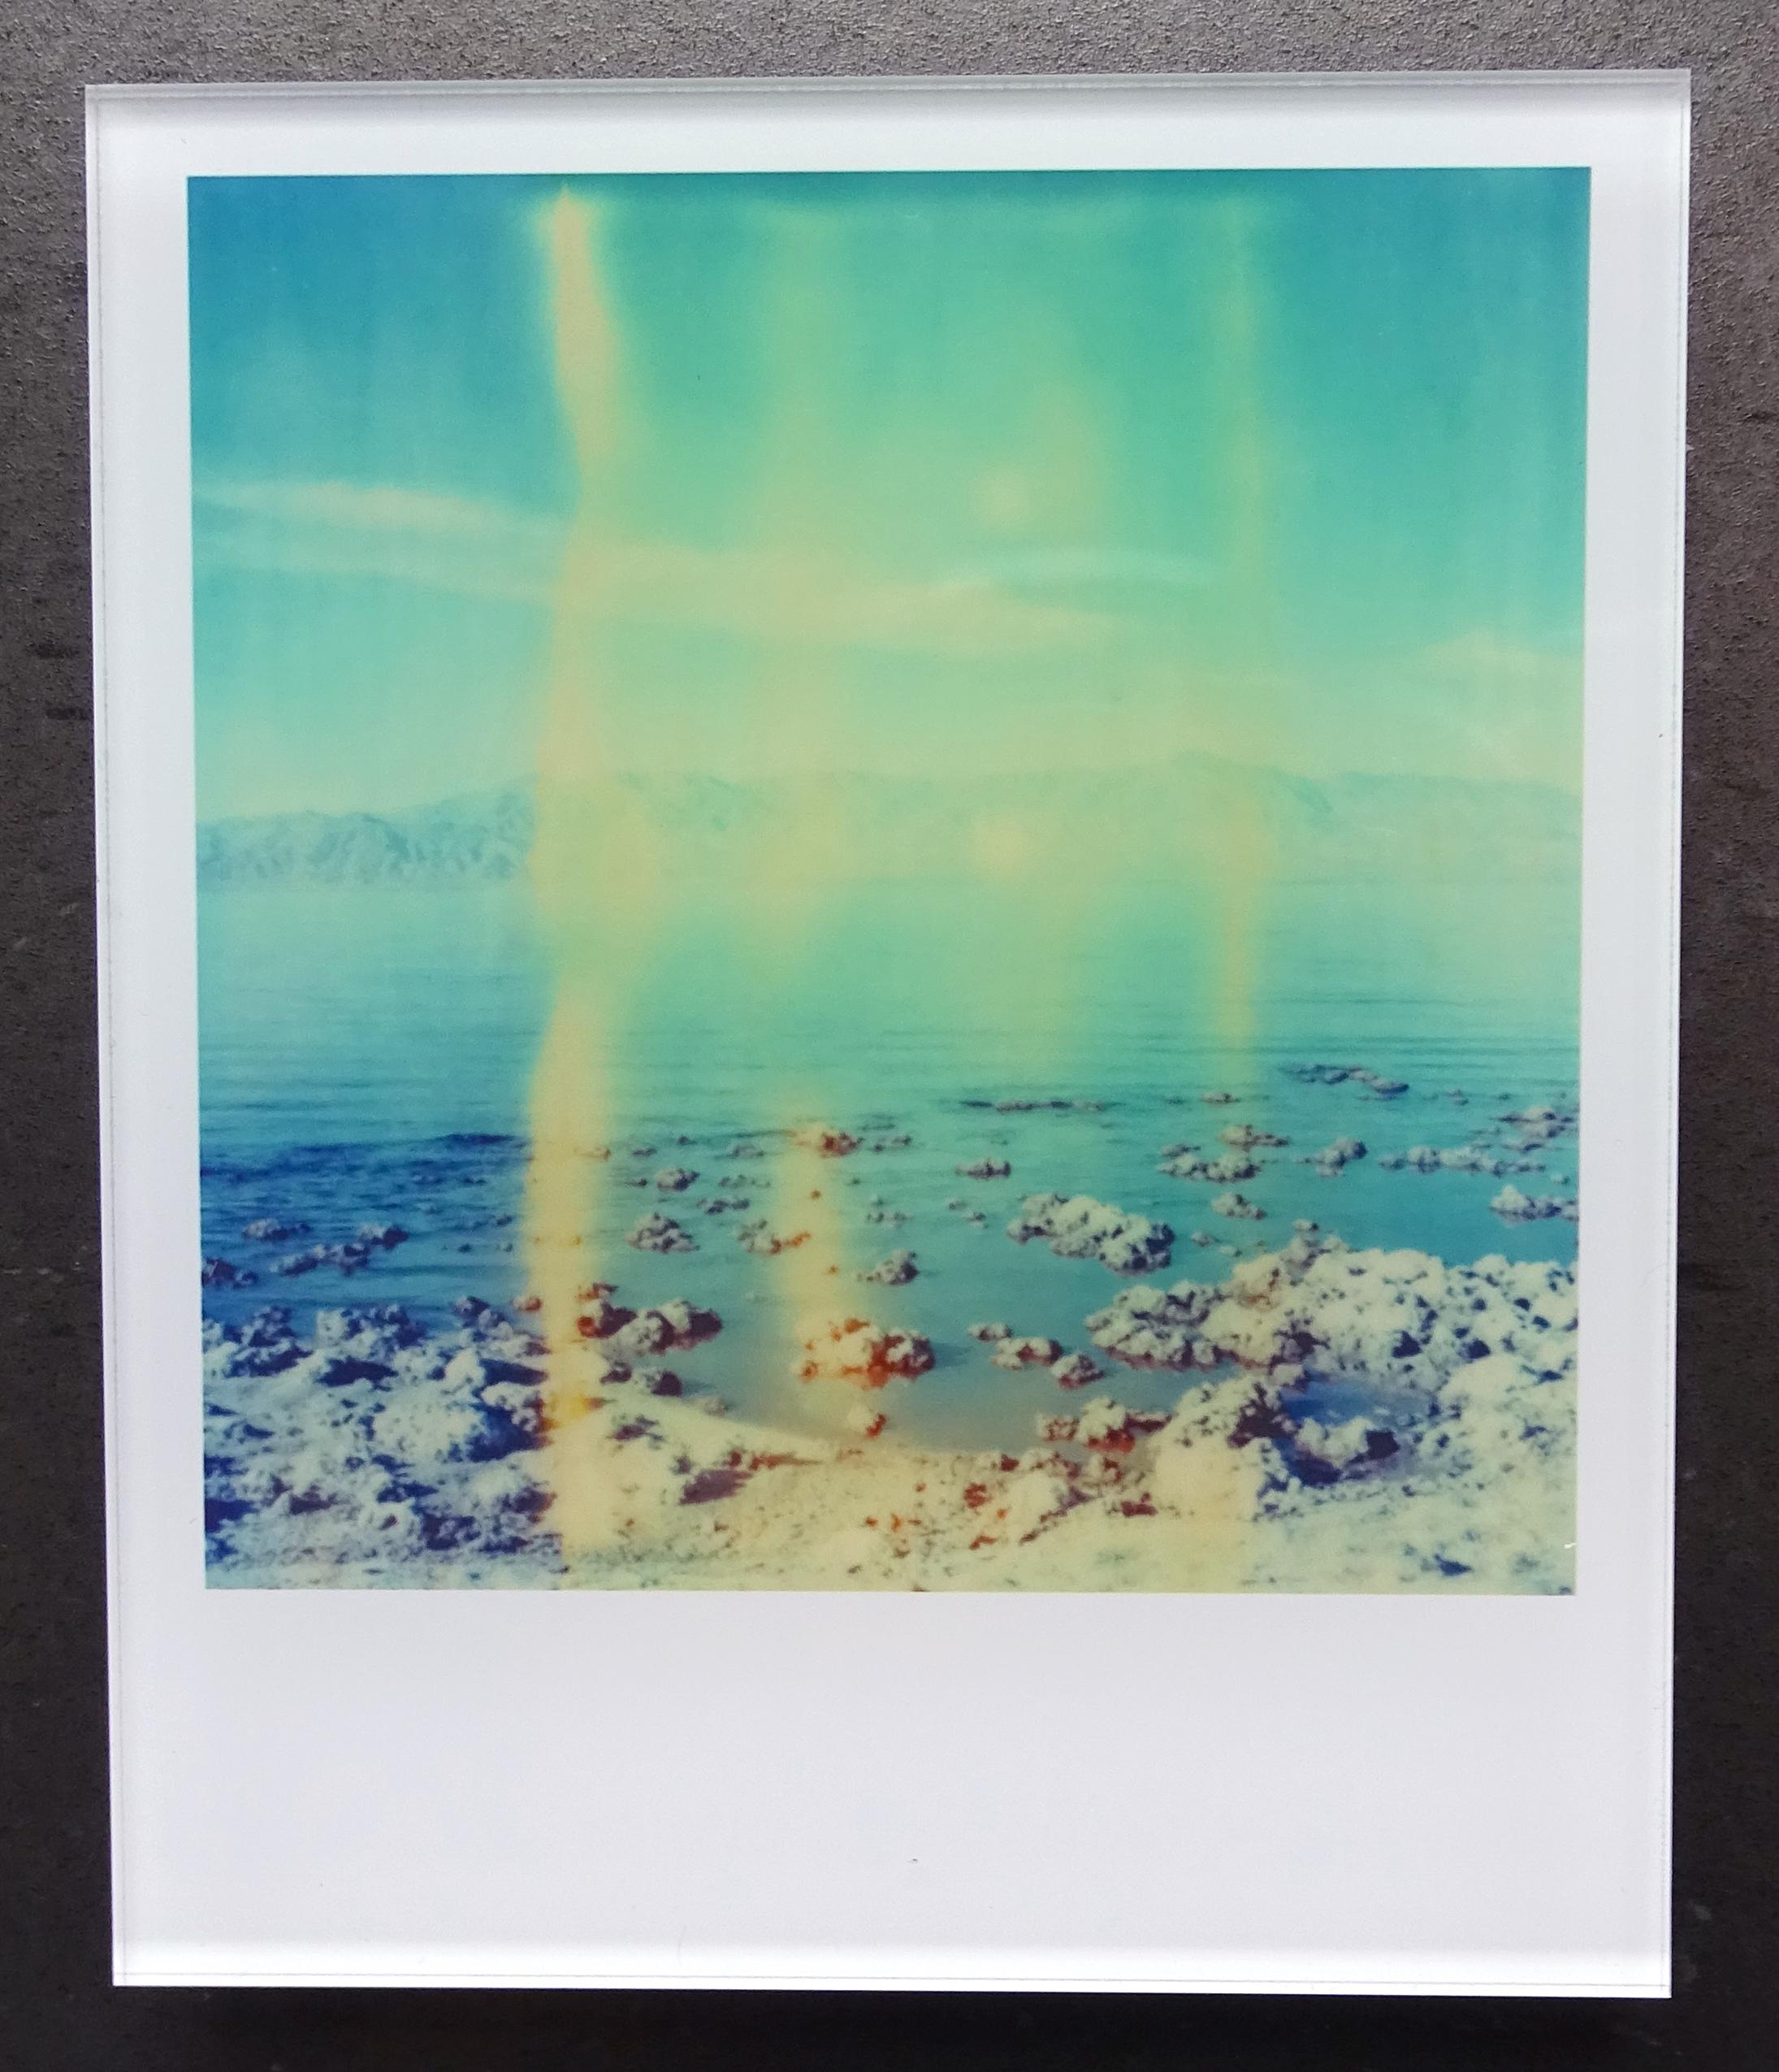 Die Minis von Stefanie Schneider
Salz und Meer (California Badlands) - 2010

Verso signiert und Signaturmarke.
Digitale Lambda-Farbfotografien auf der Grundlage eines Polaroids.
Eingeklemmt zwischen Plexiglas (Dicke 0,7 cm)

Offene Editionen in